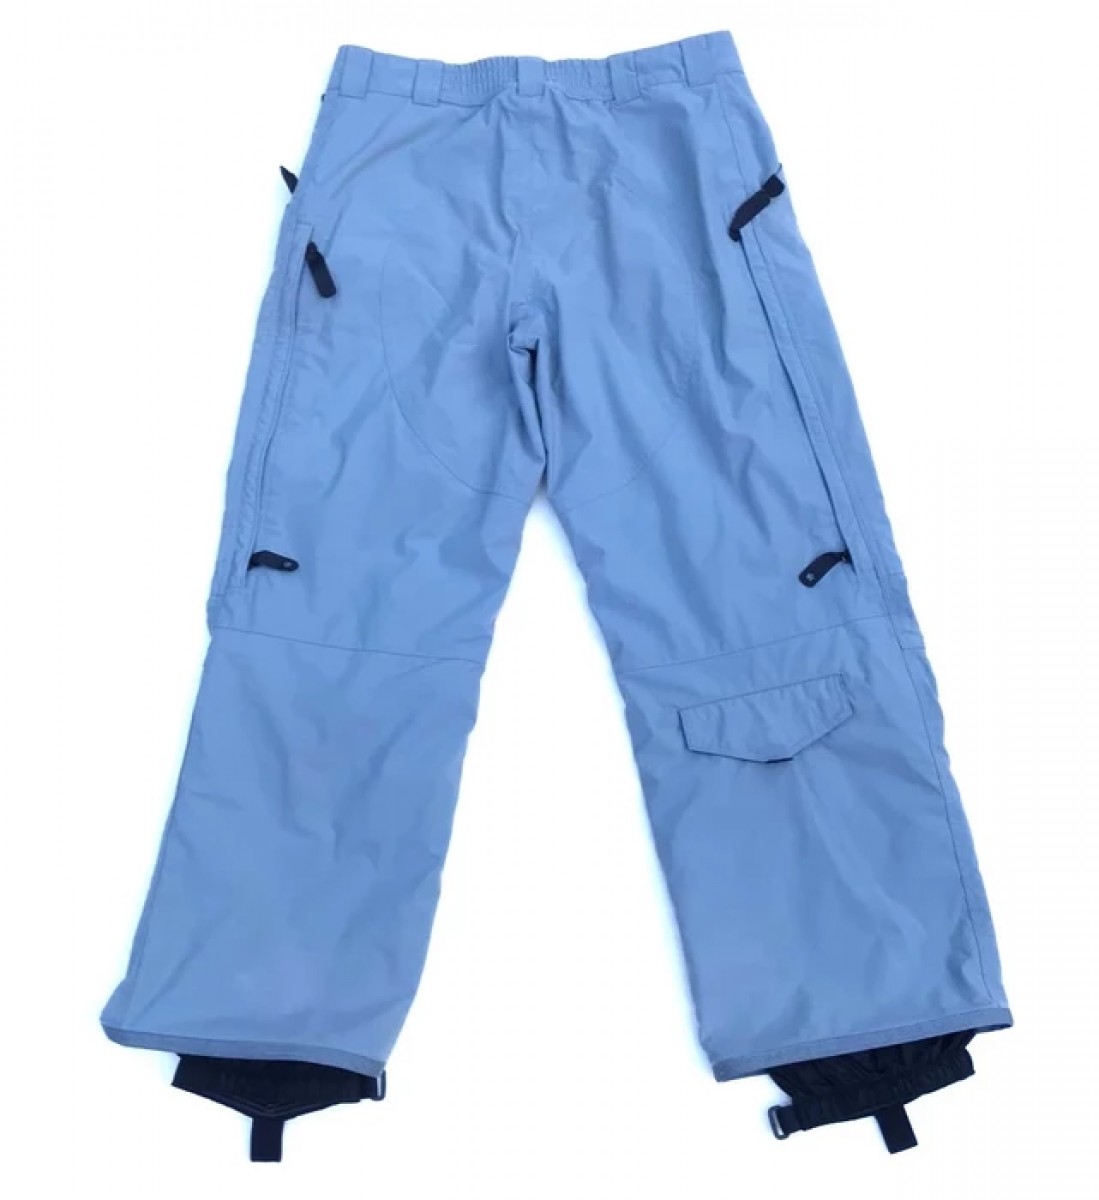 Men's Ski Pants, Nike ACG Ski Pants